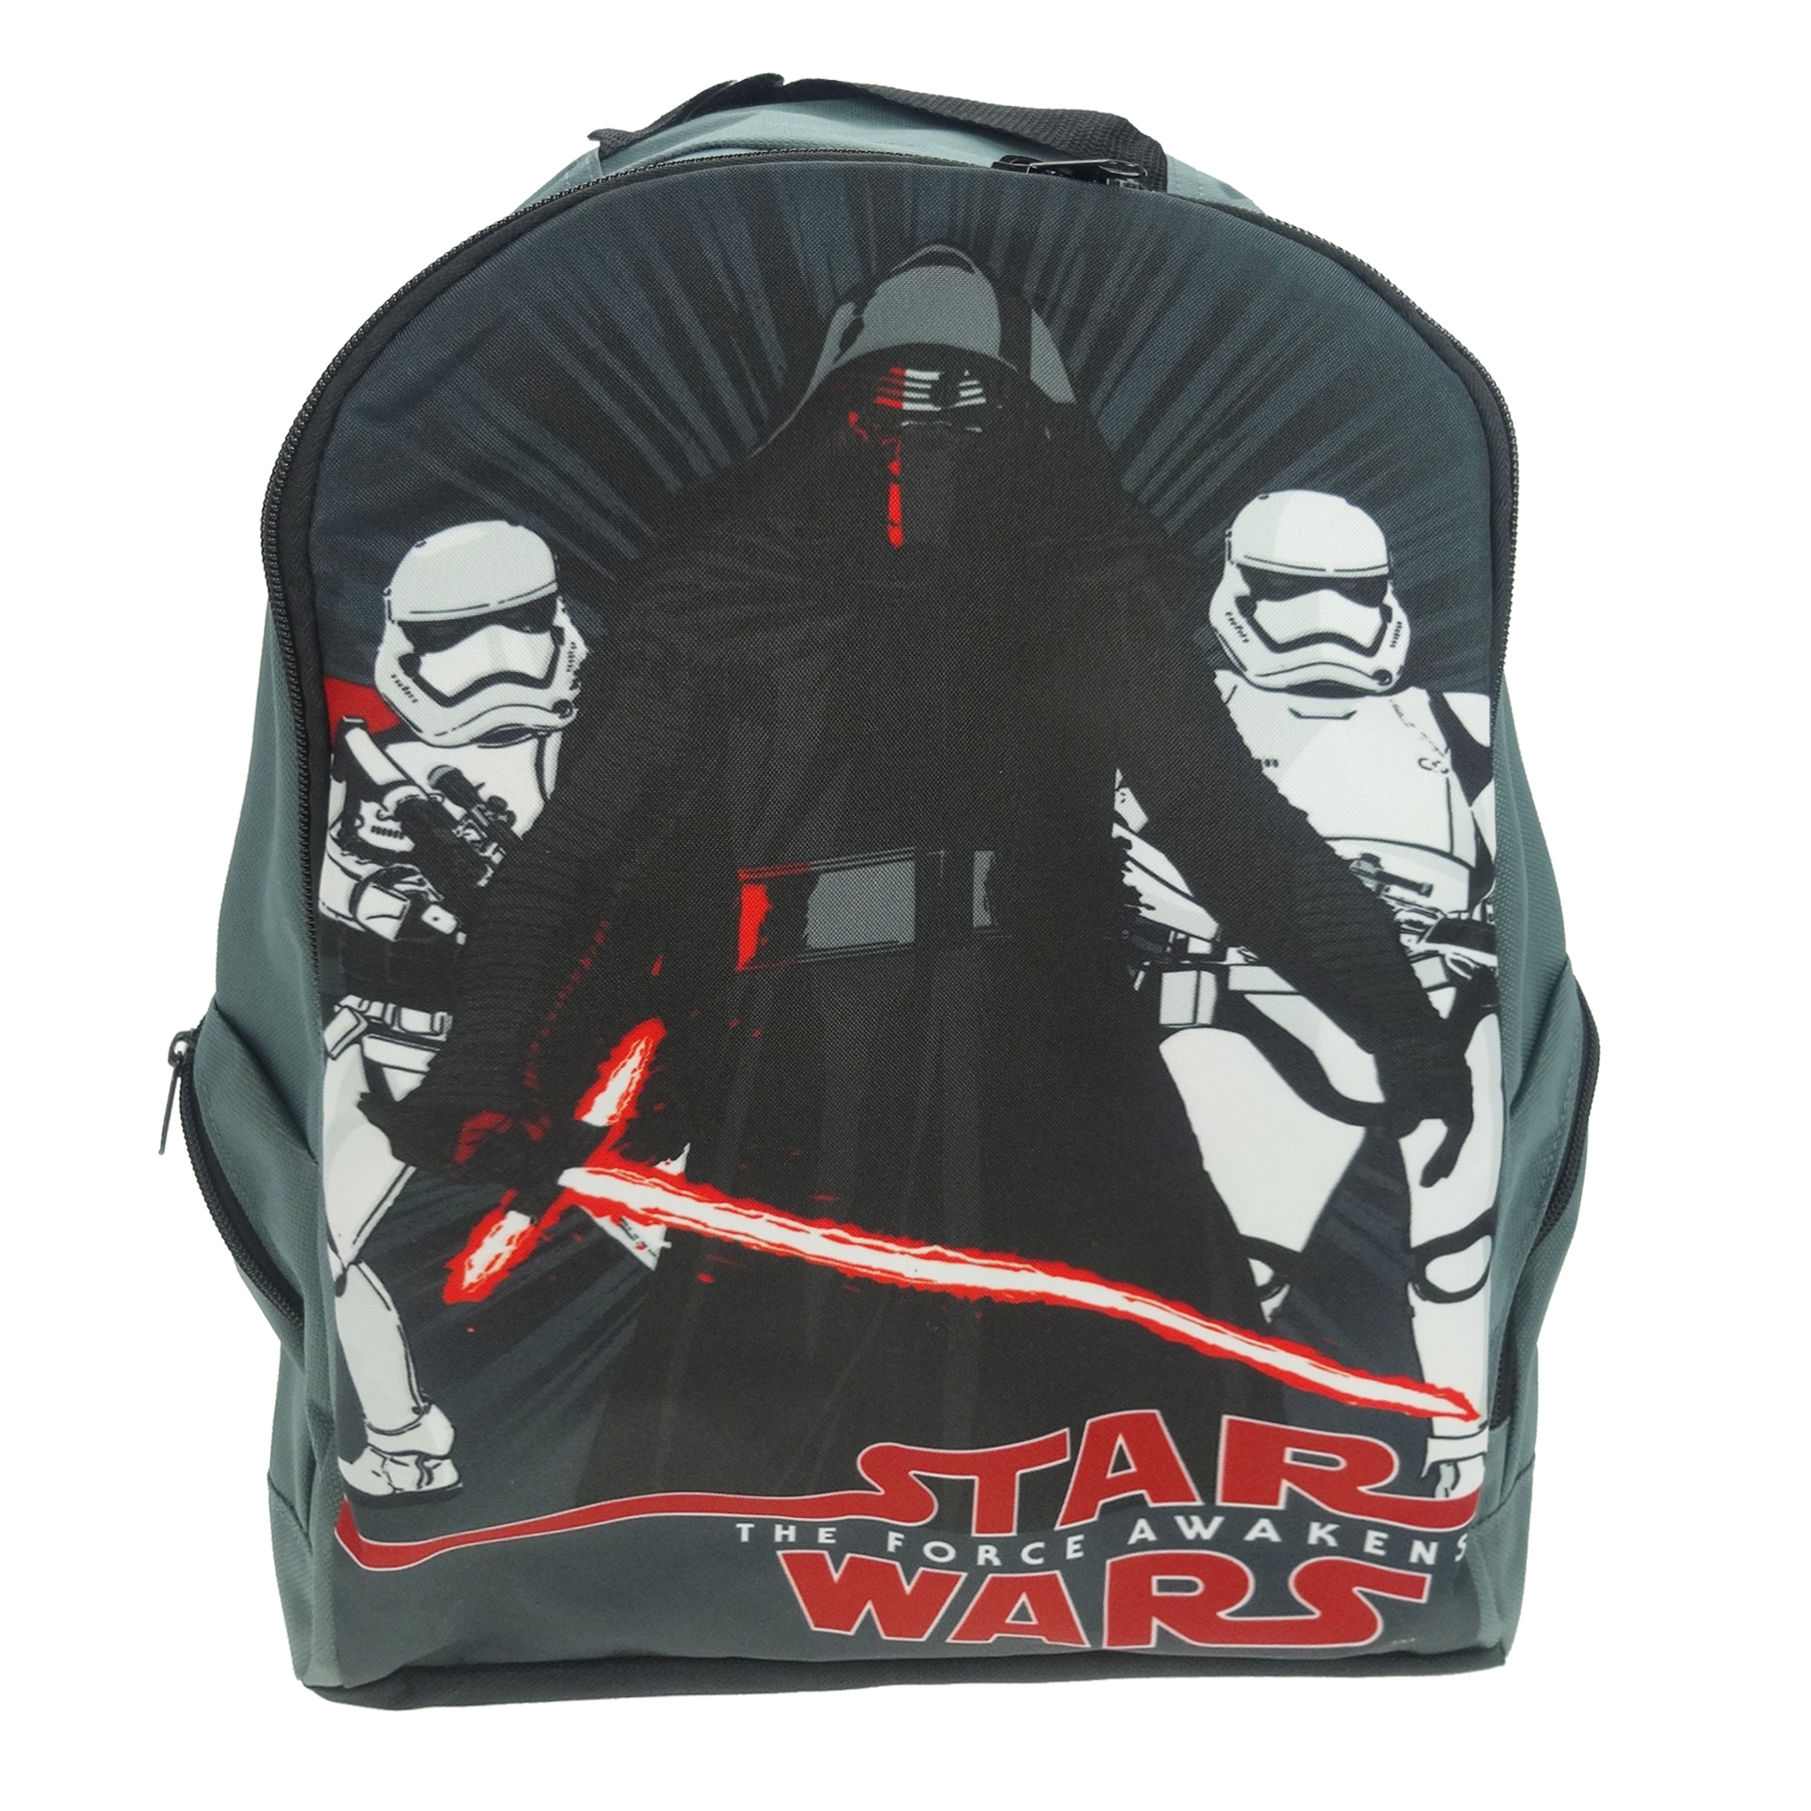 Star Wars Sports 'Elite Squad' School Bag Rucksack Backpack